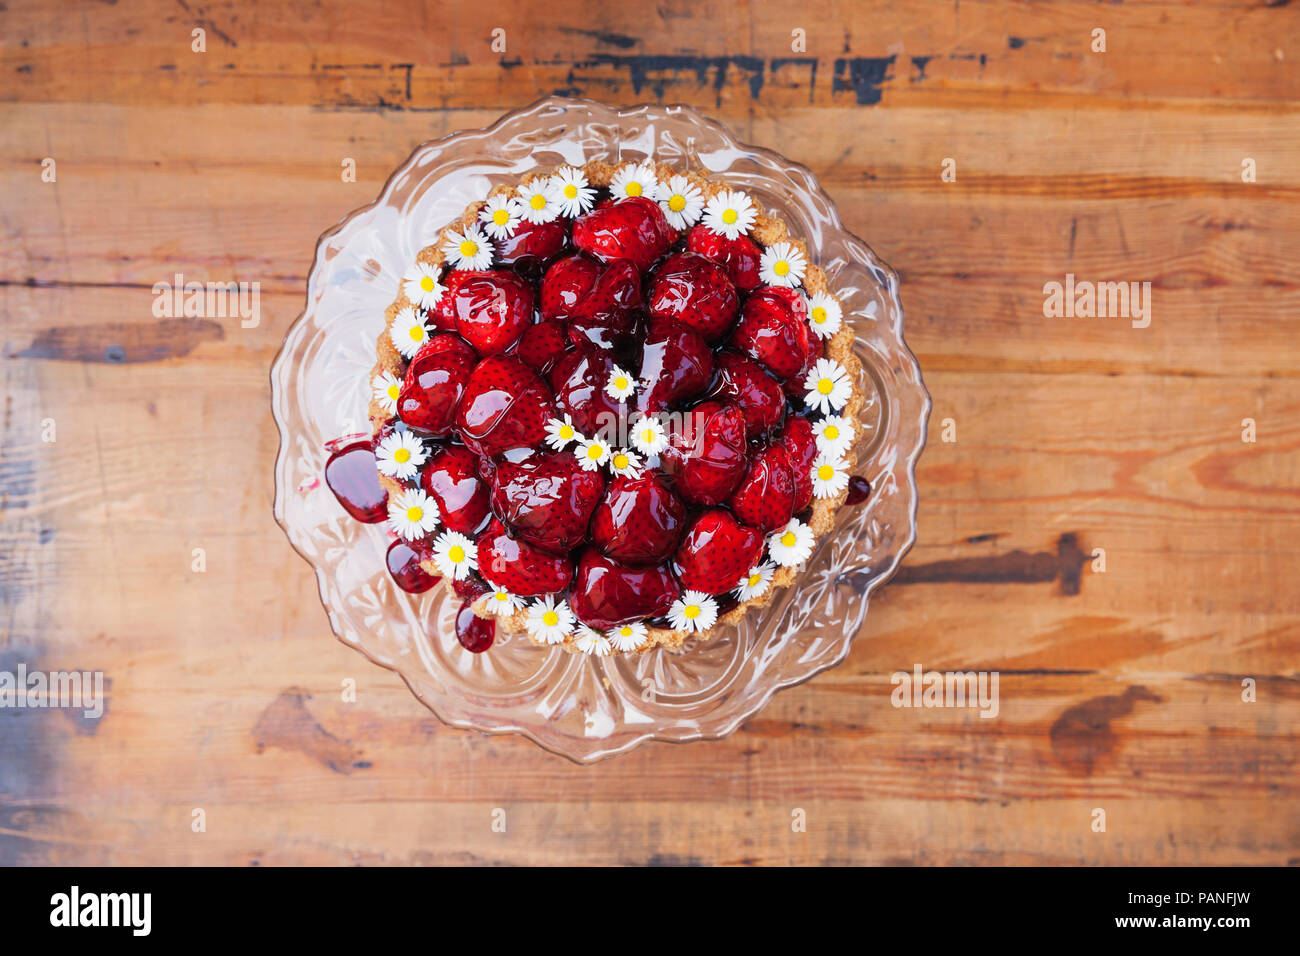 Gâteau aux fraises fait maison avec du jus de raisin rouge glaze et daisy flower décor sur verre cake stand Banque D'Images